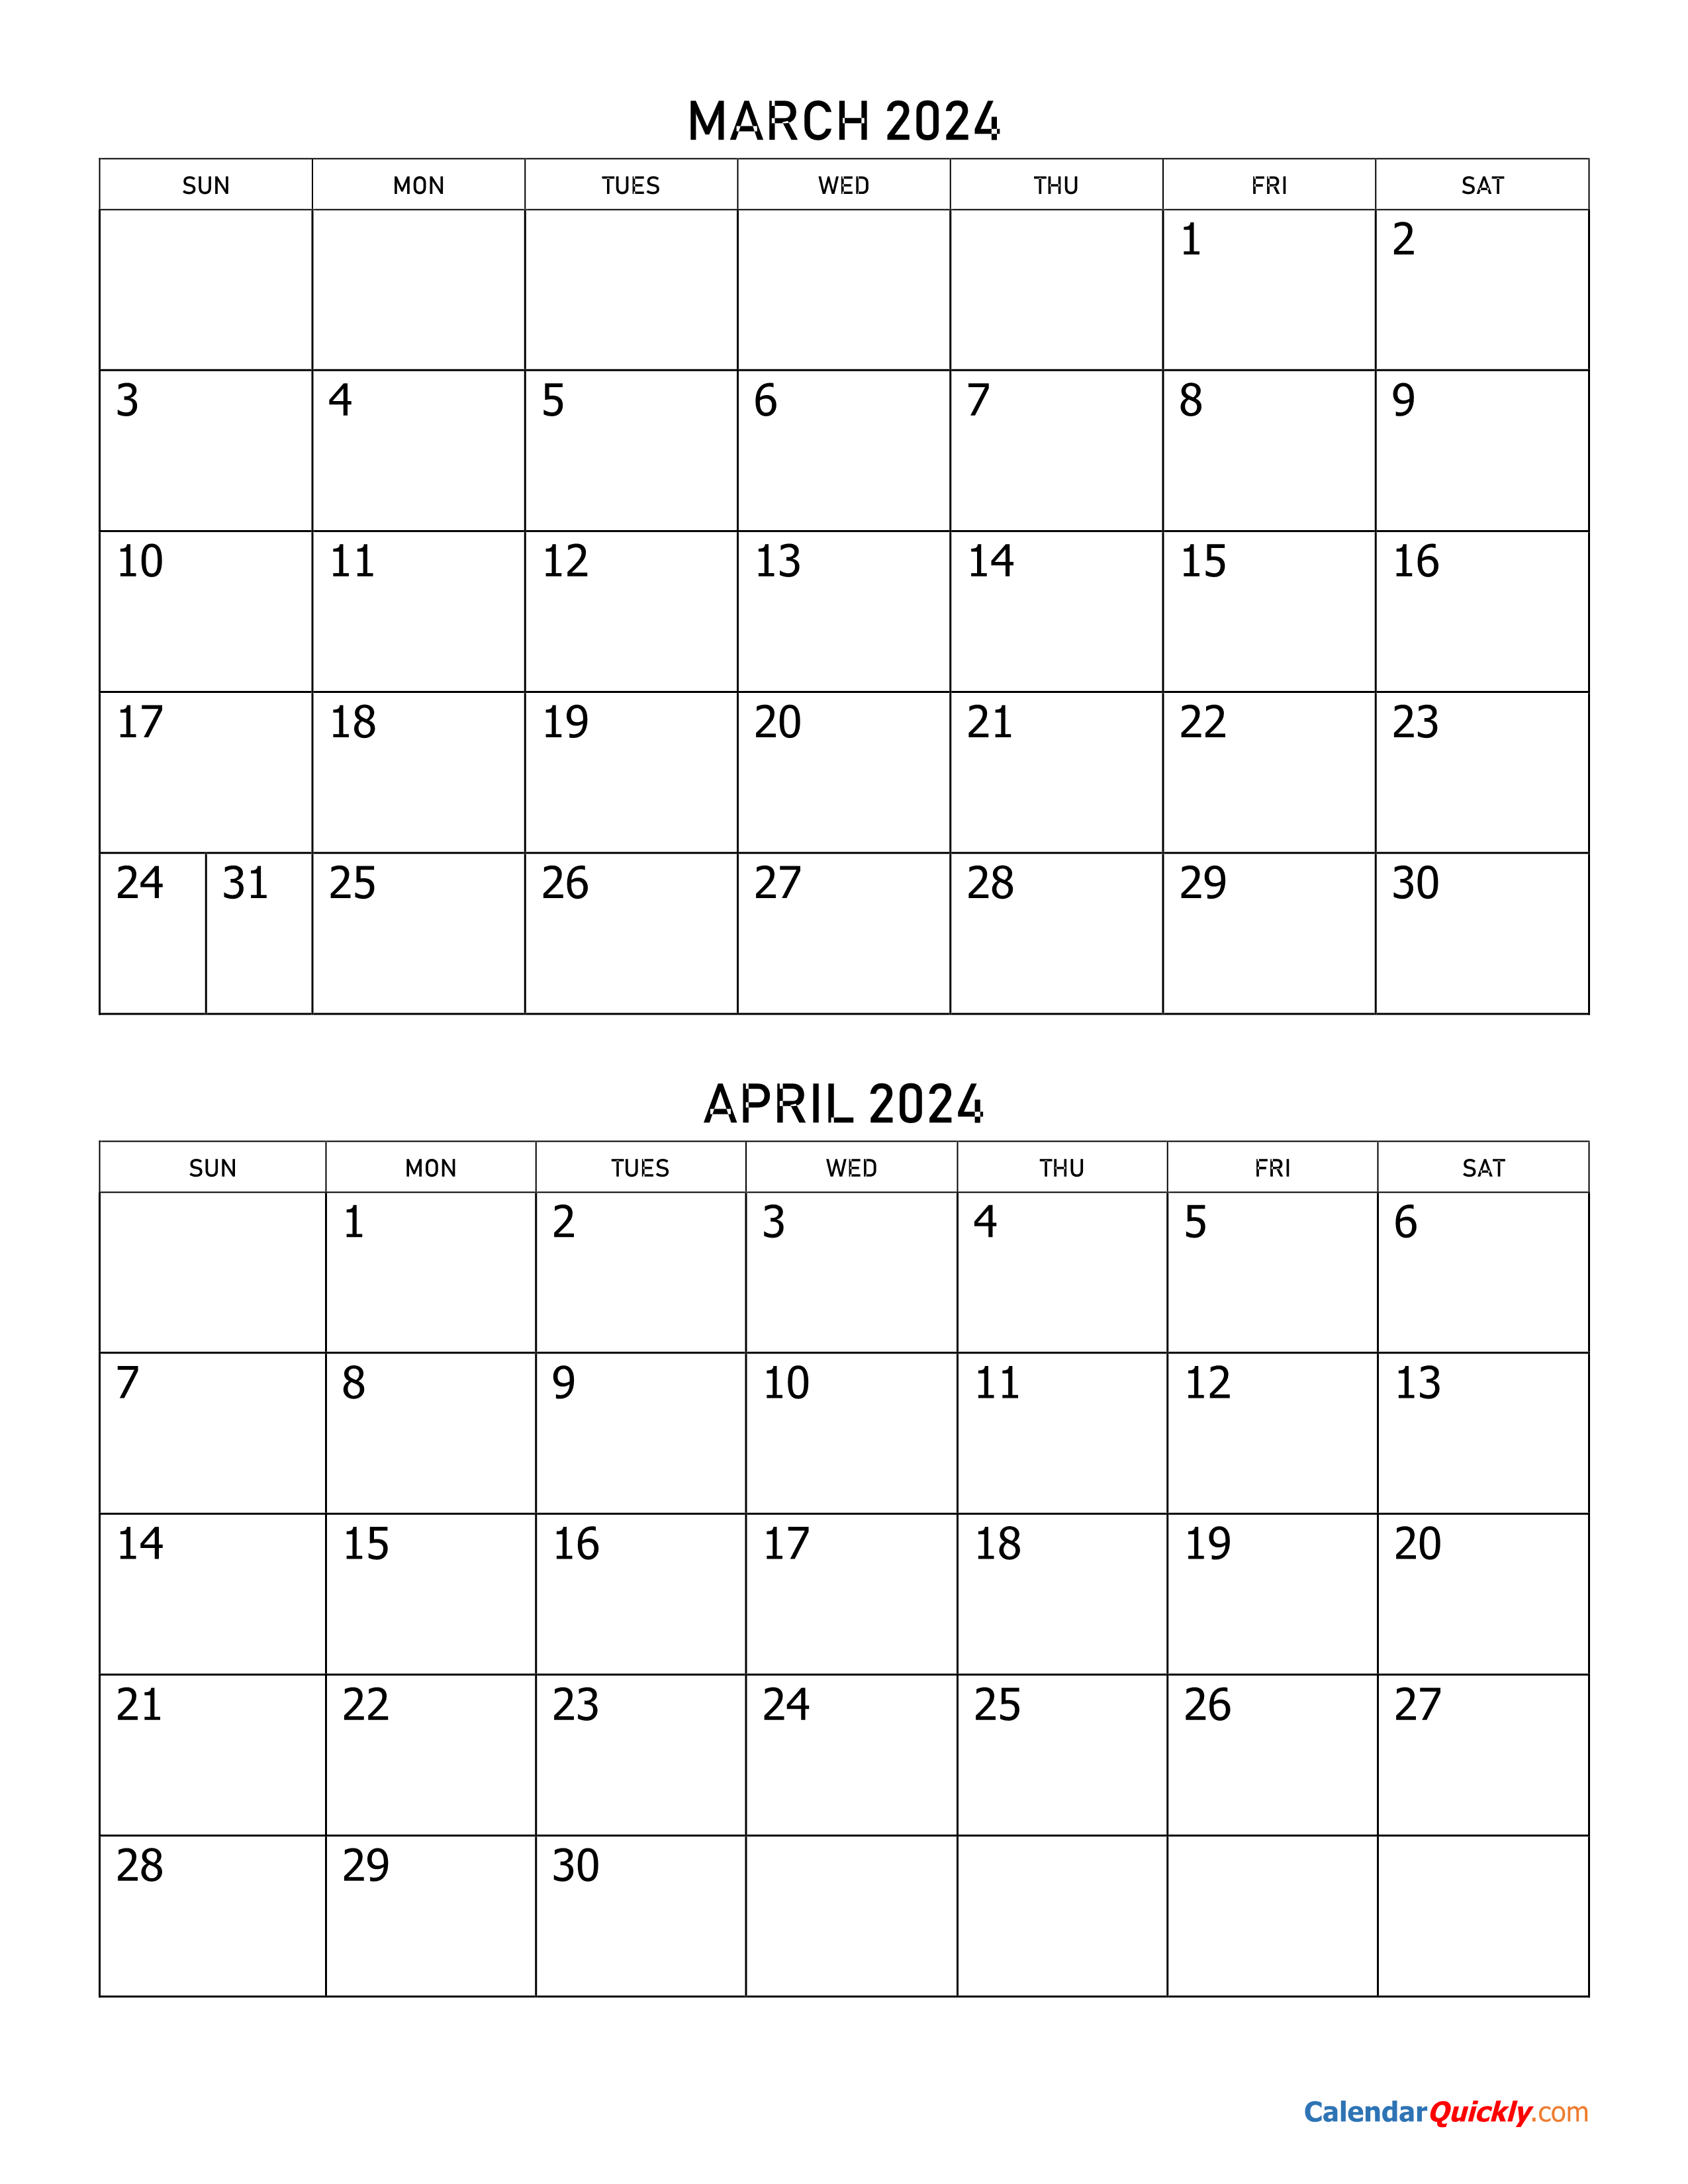 March And April 2024 Calendar | Calendar Quickly regarding 2024 Calendar March April May June